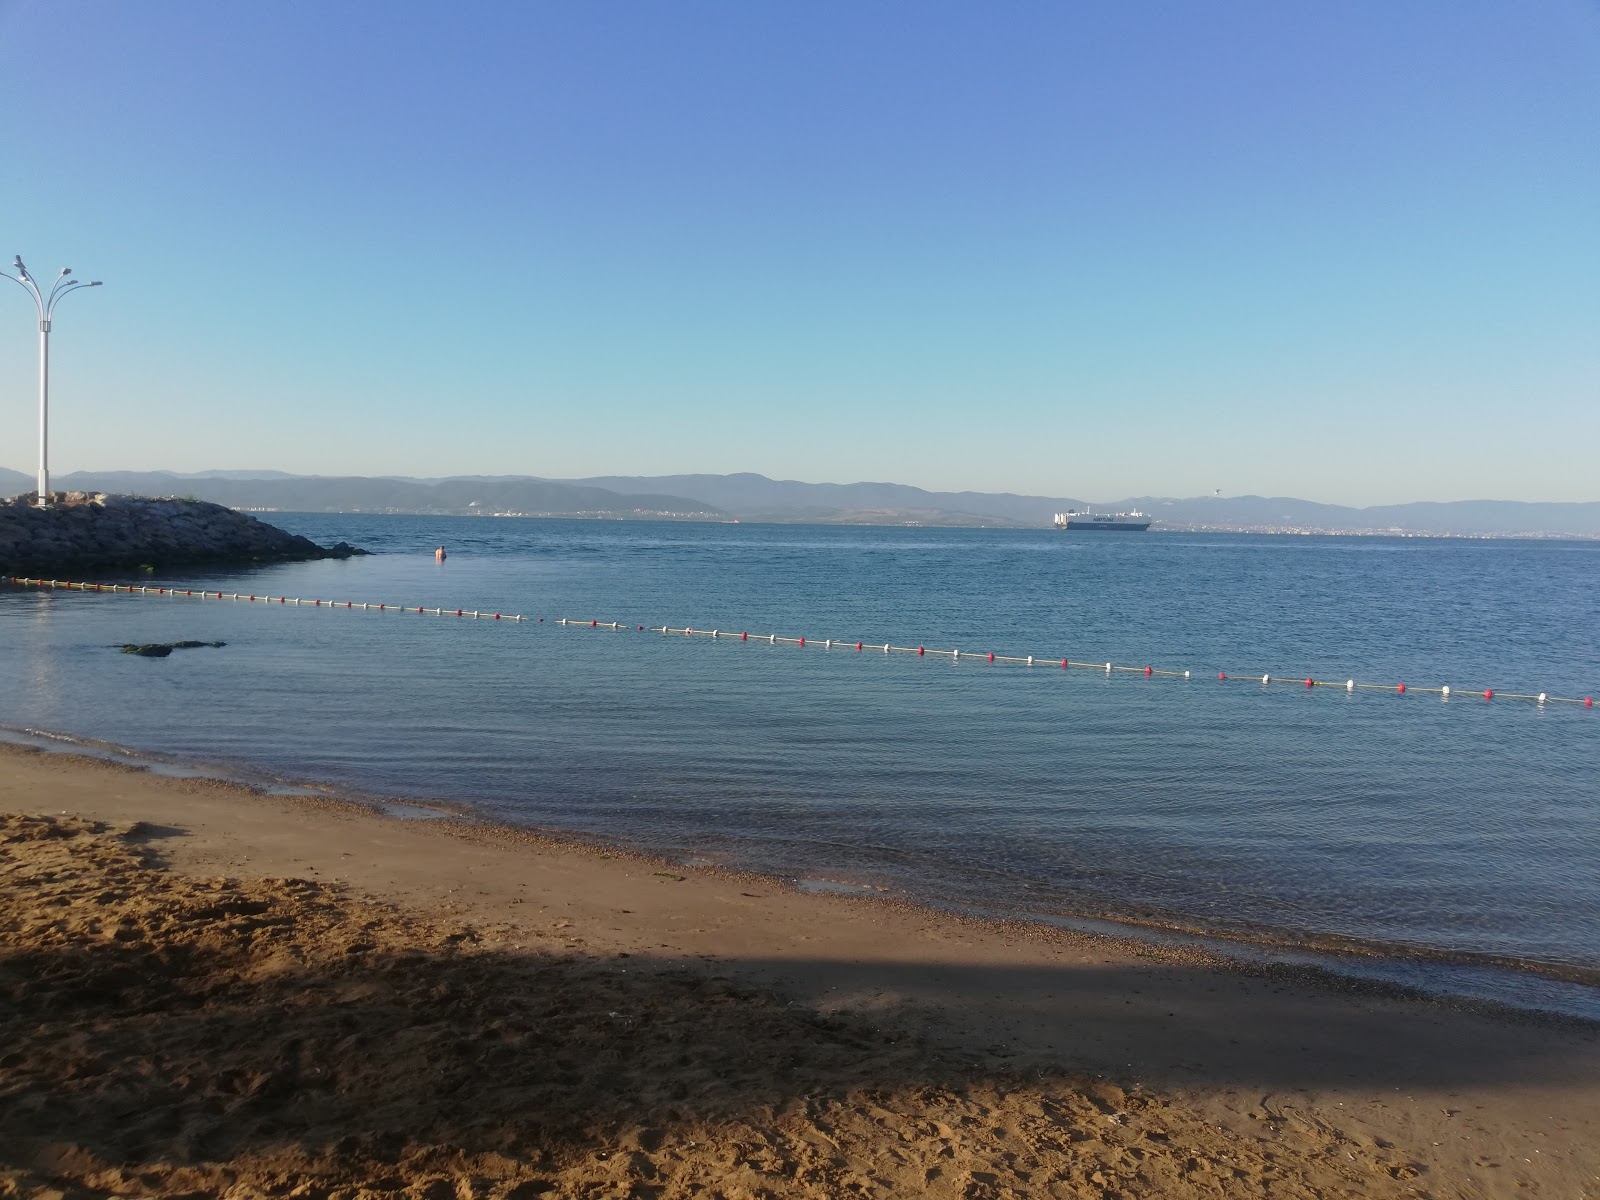 Darıca Plajı'in fotoğrafı açık yeşil su yüzey ile